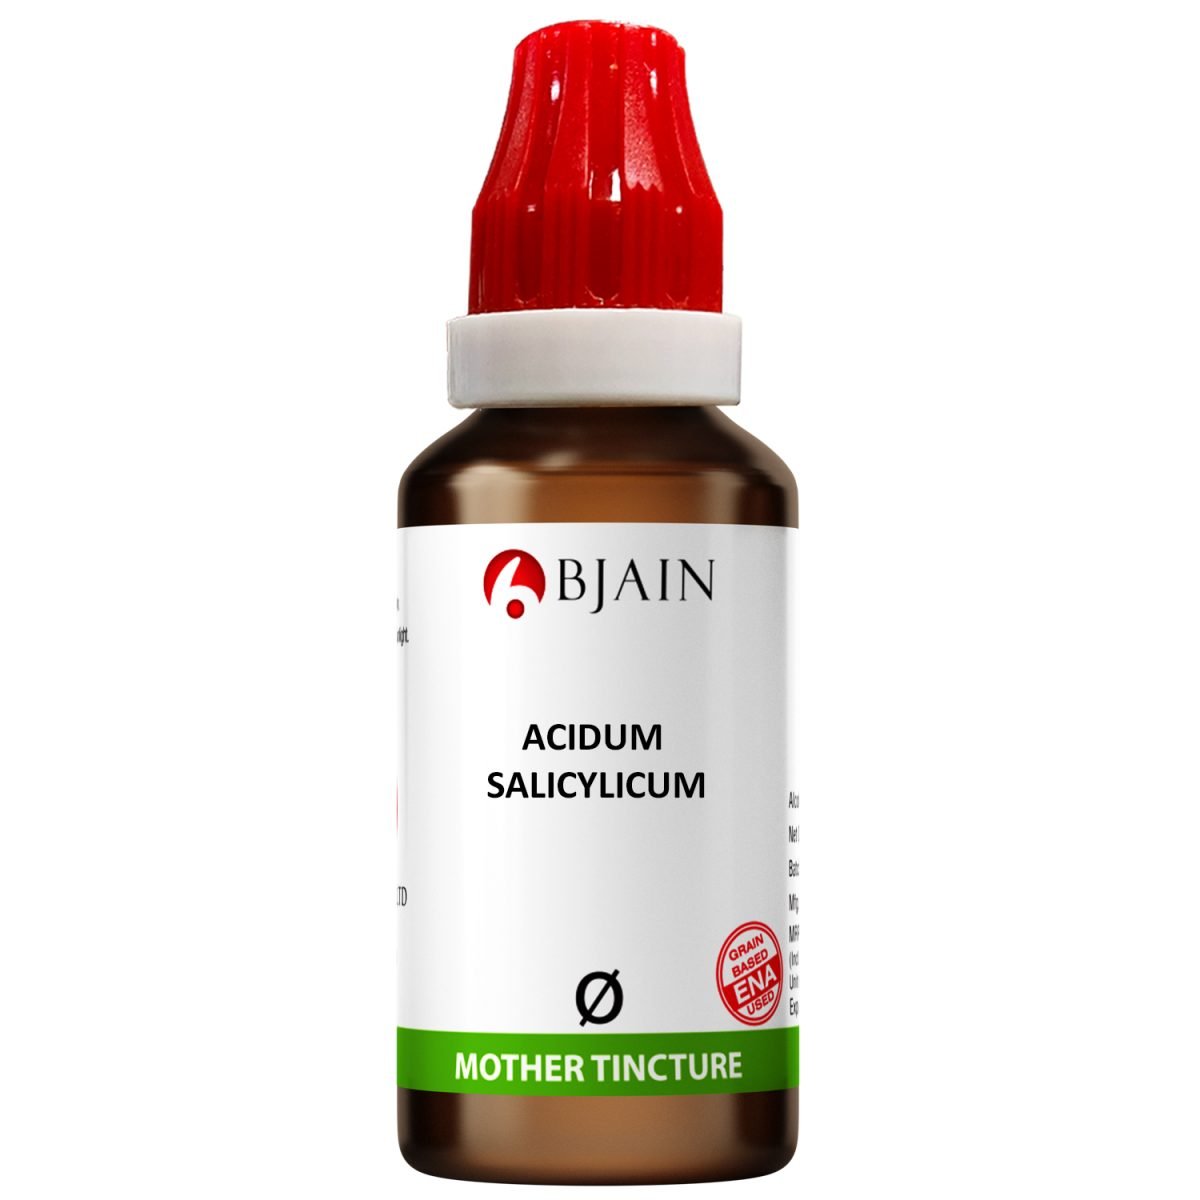 BJain Acidum Salicylicum Q Mother Tincture